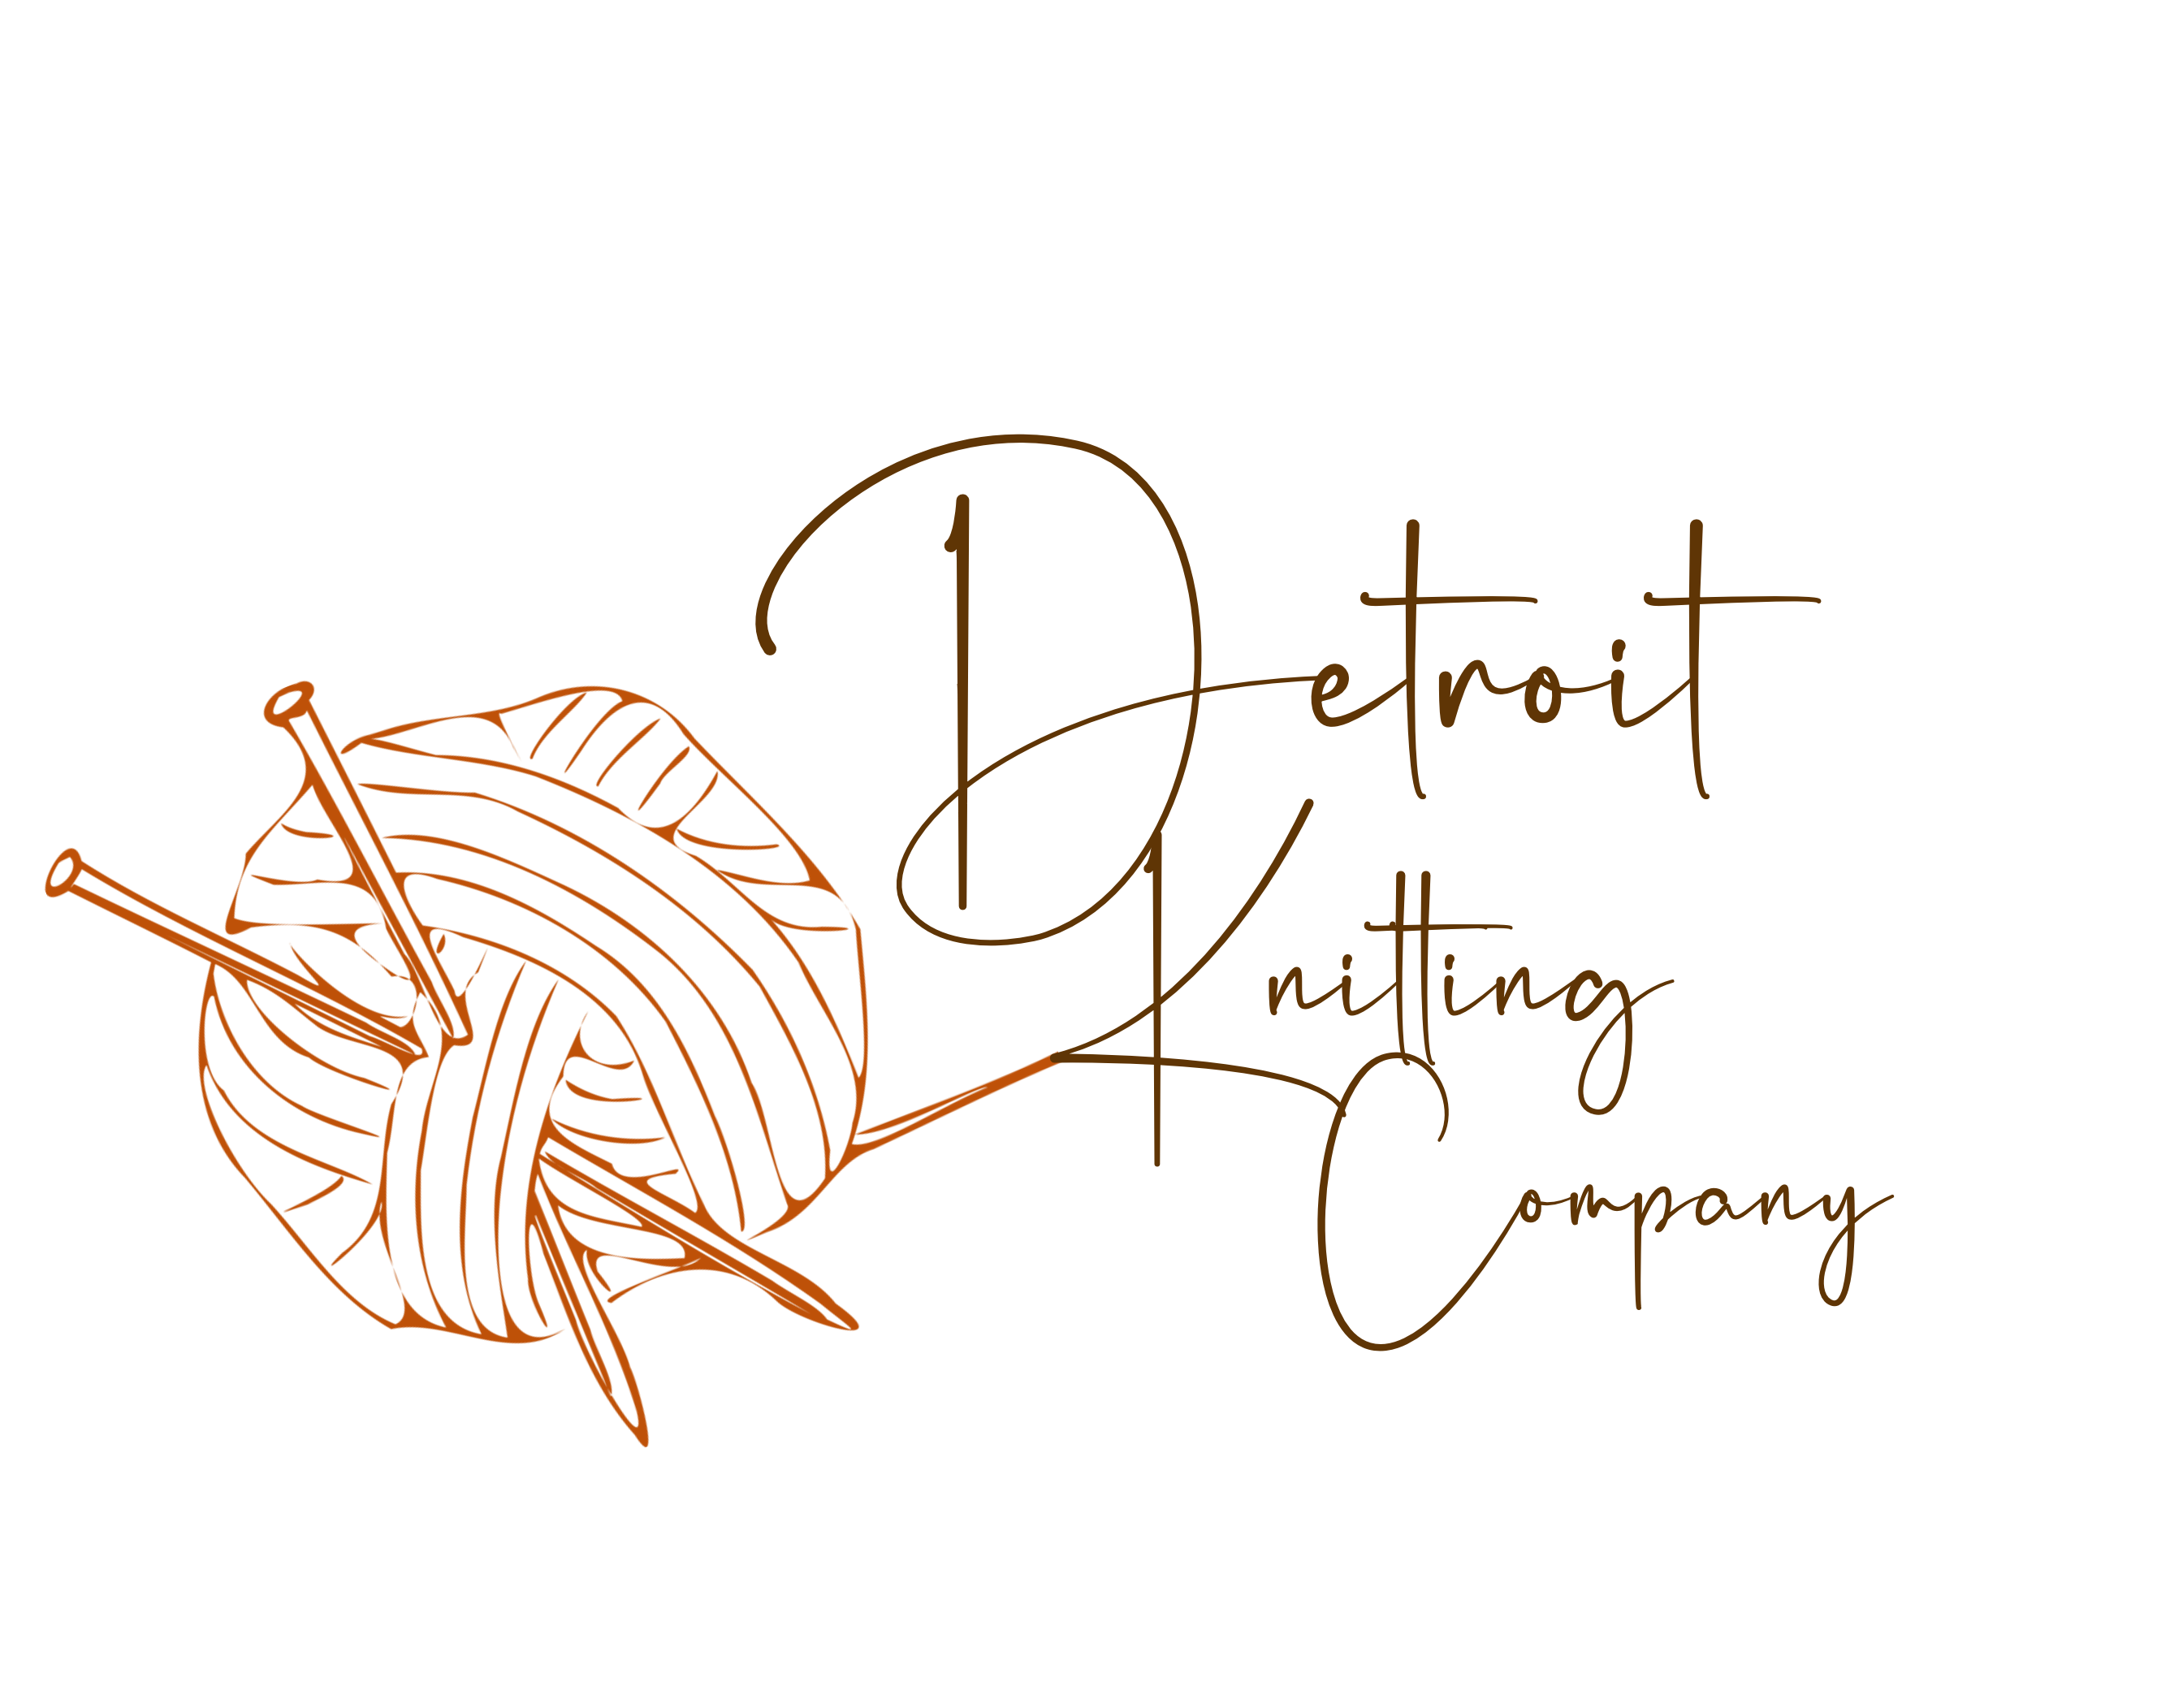 Detroit Knitting Company